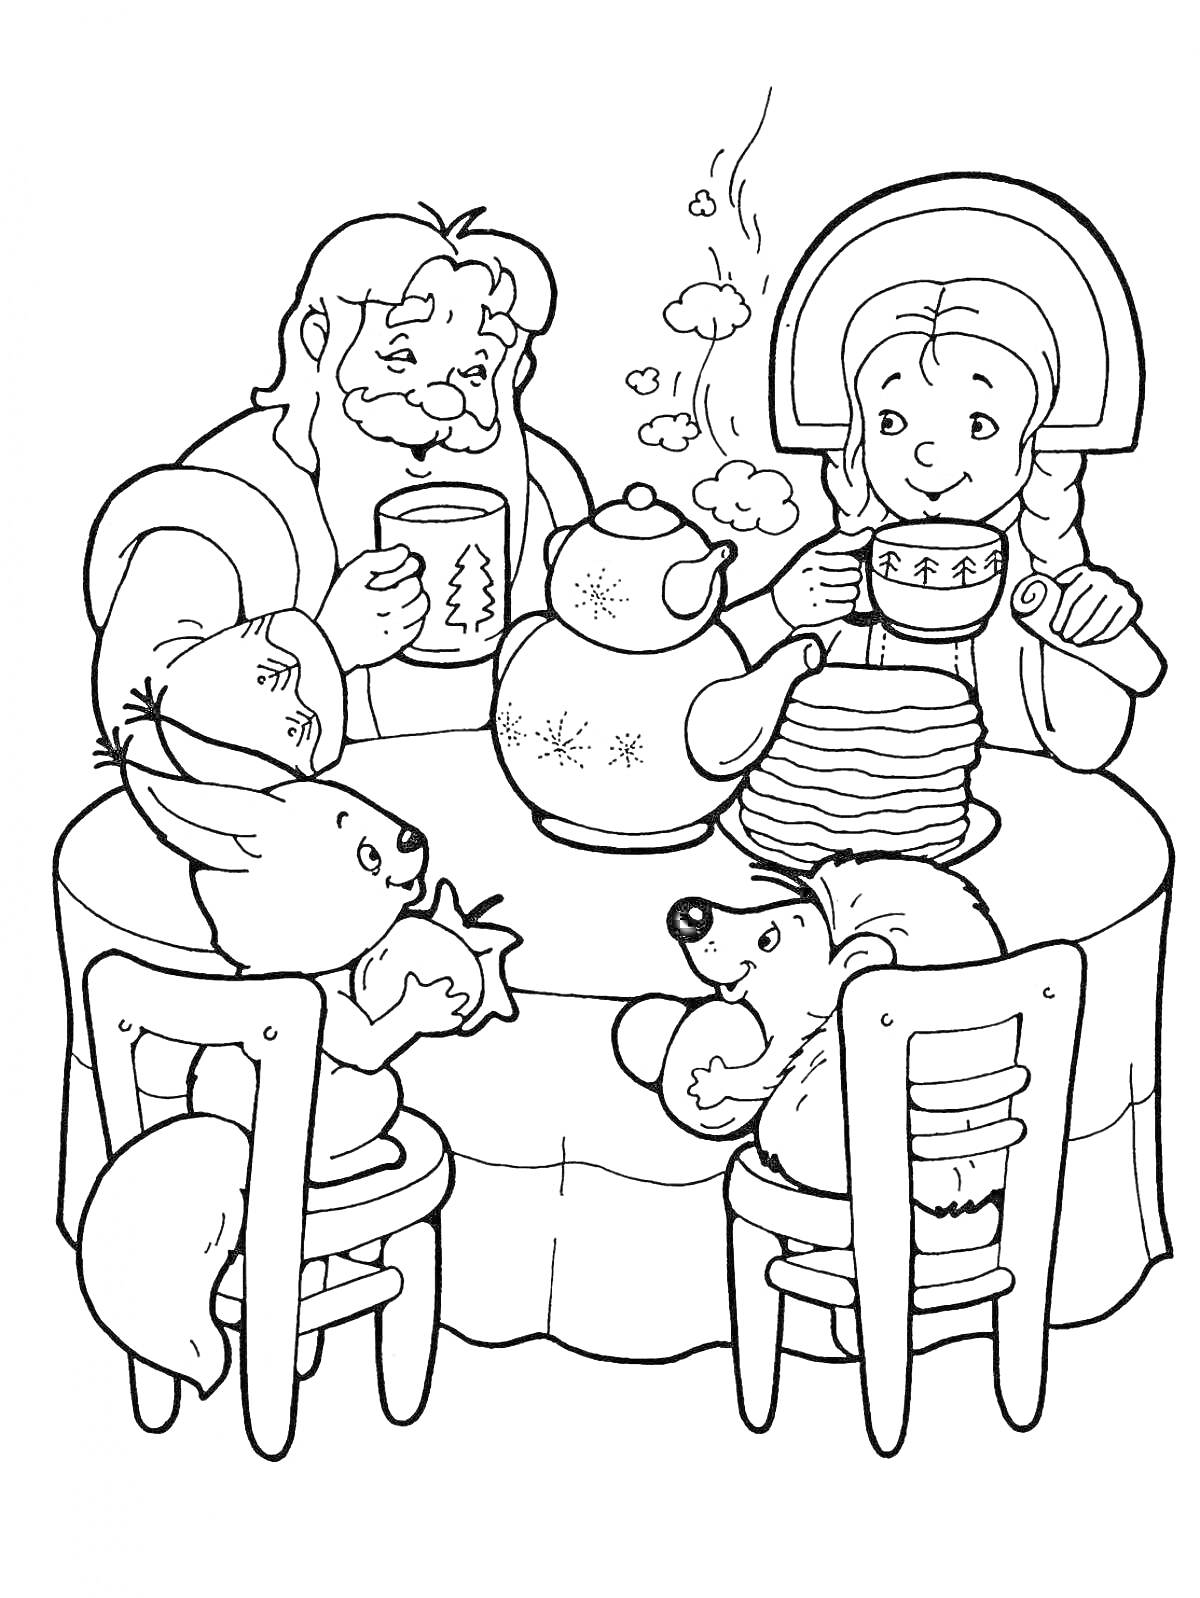 Раскраска Дед Мороз и Снегурочка за столом с животными, пьют чай